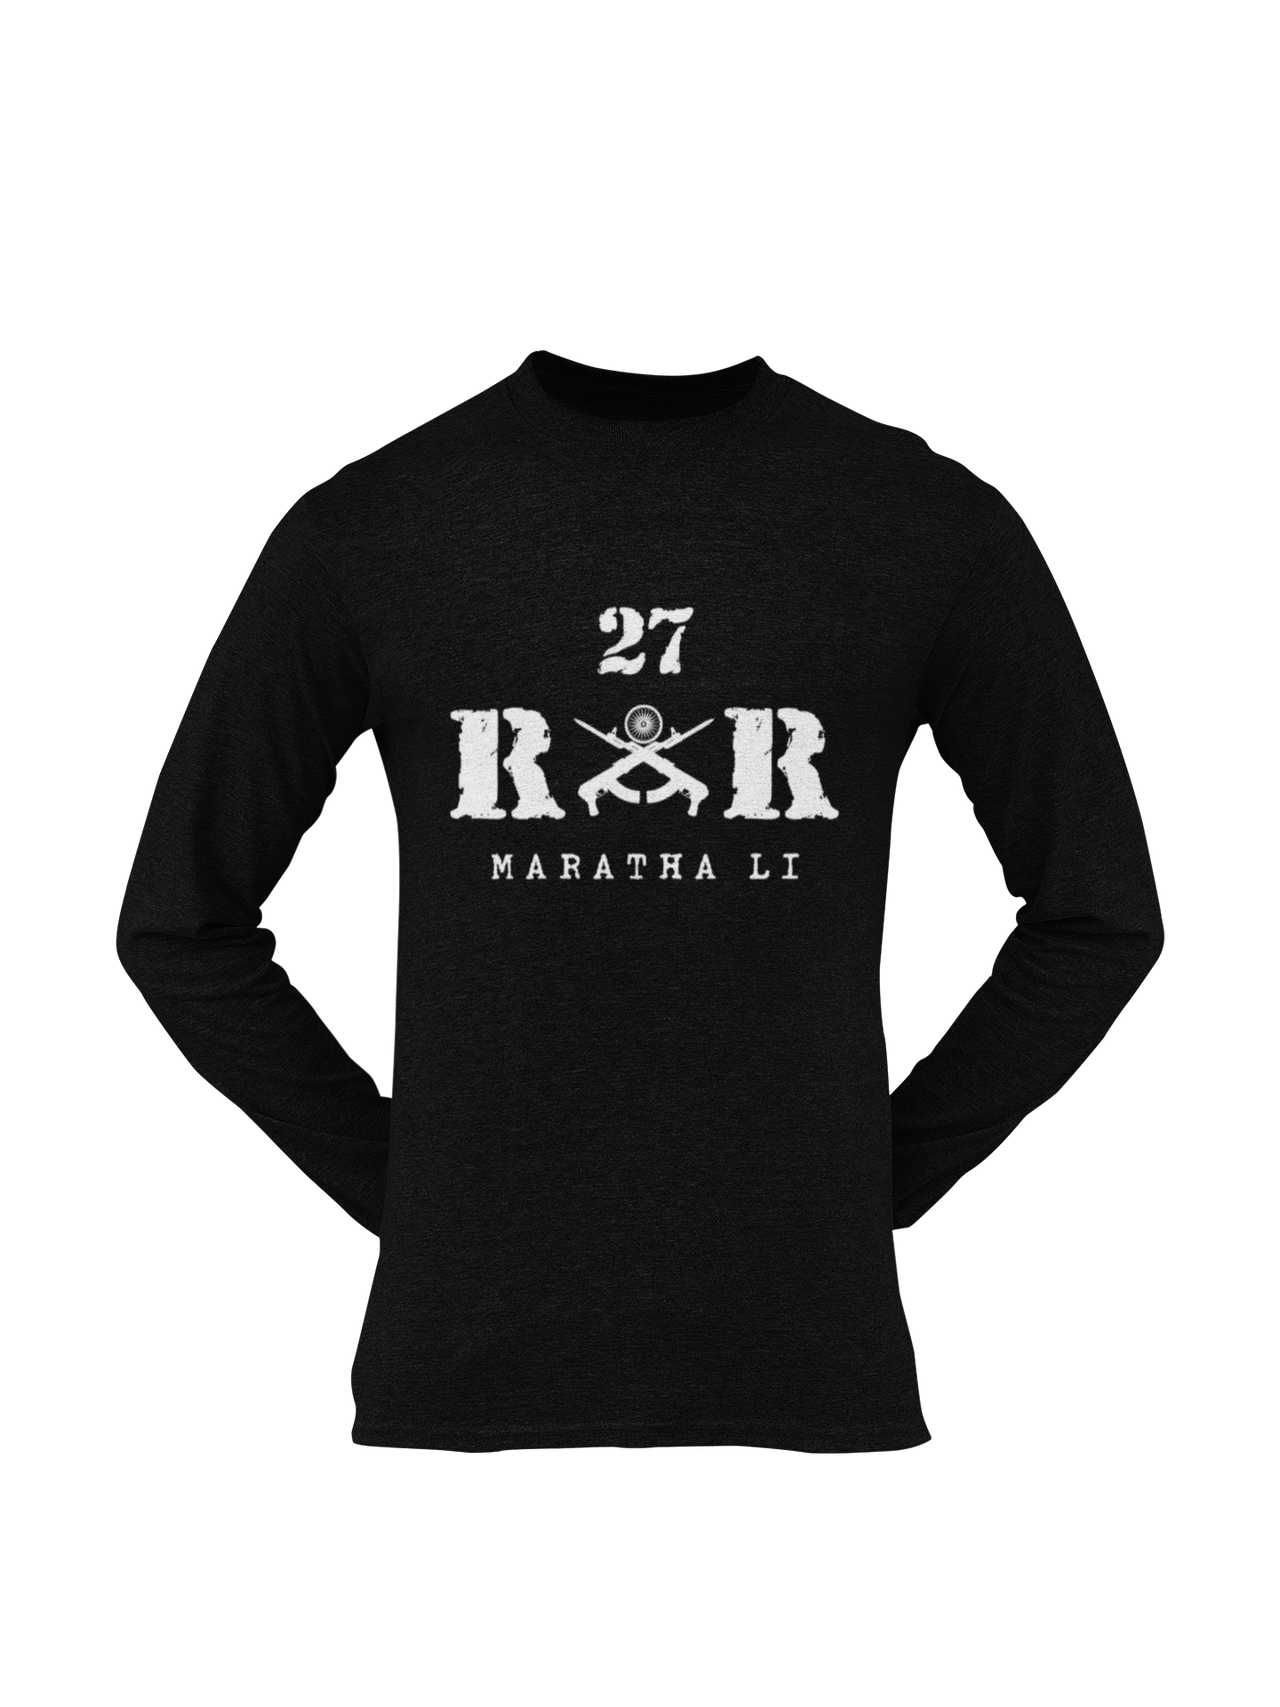 Rashtriya Rifles T-shirt - 28 RR Jak Rif (Men)